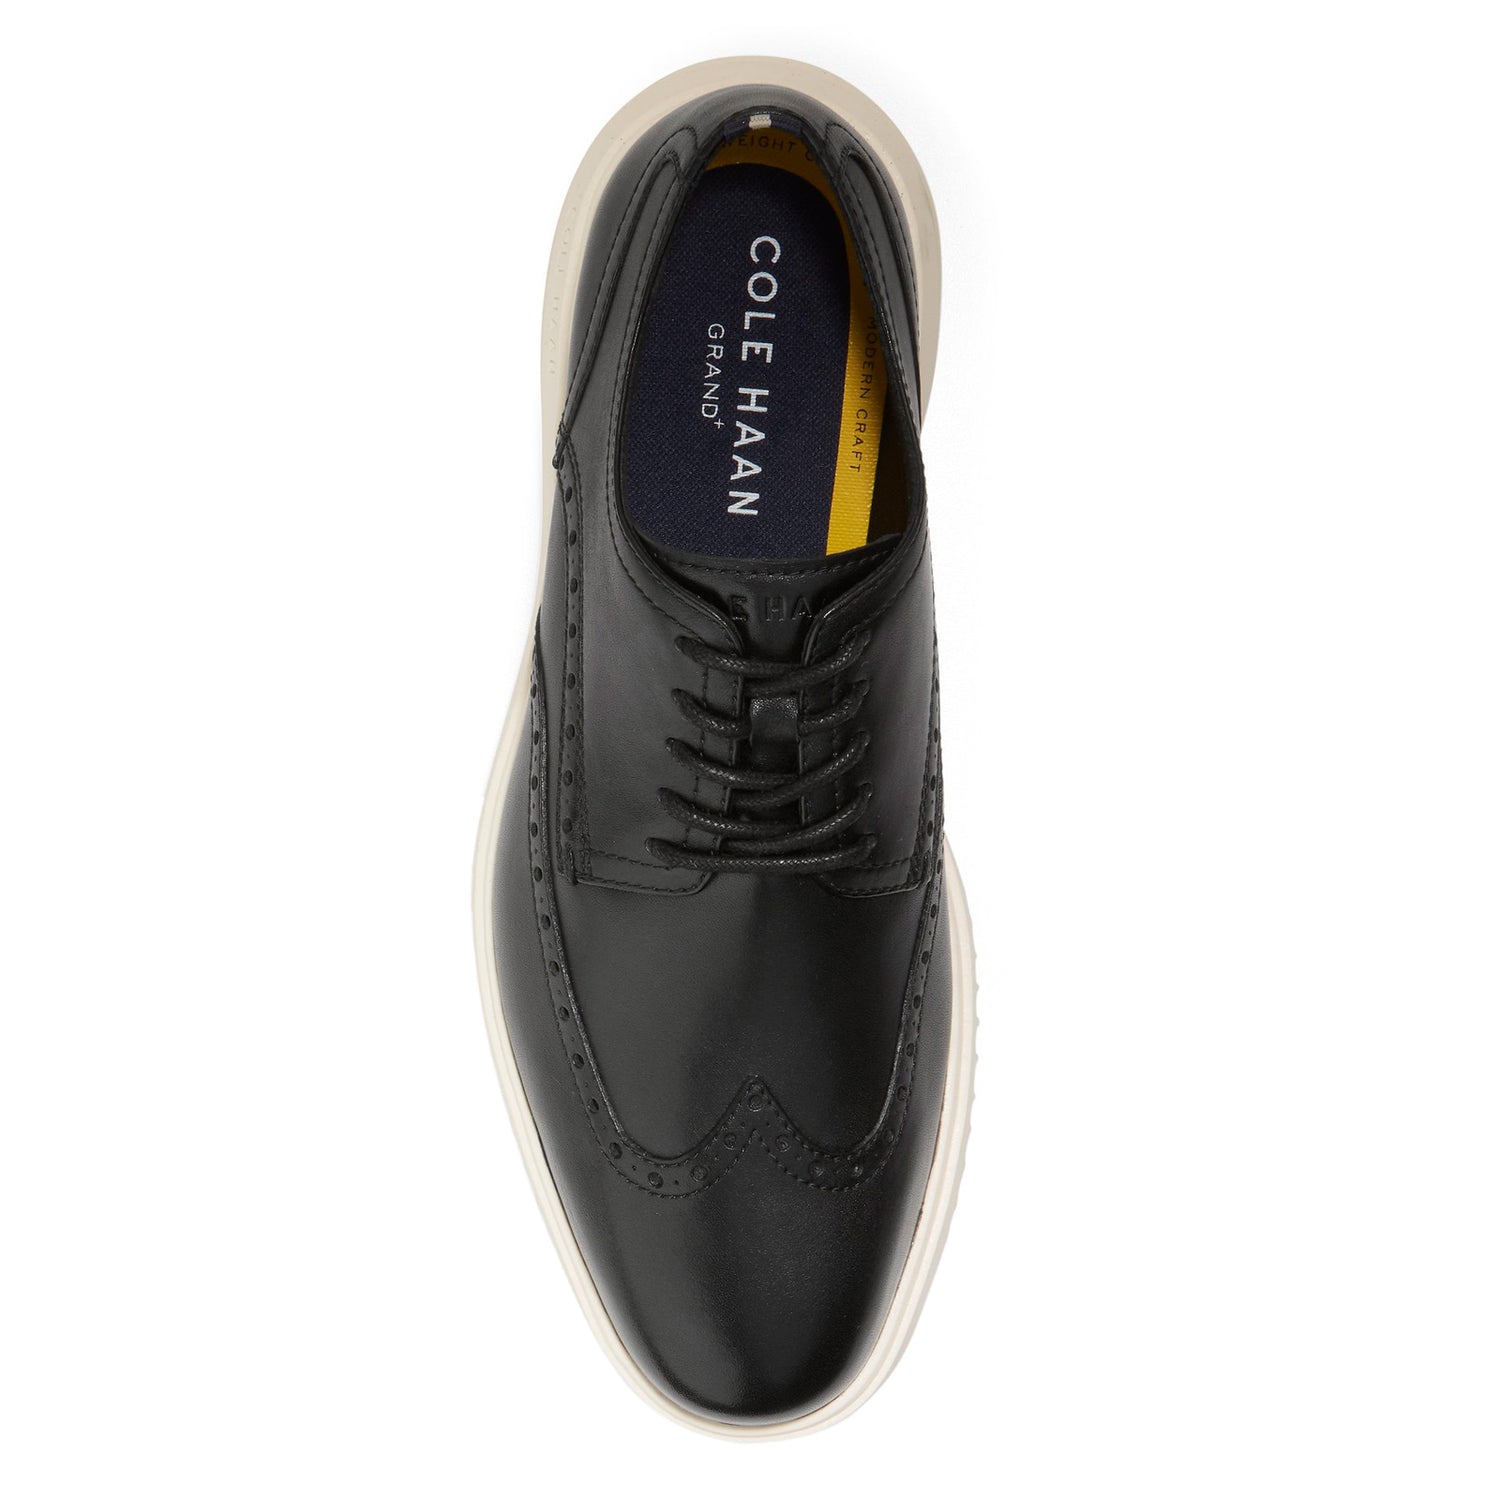 Peltz Shoes  Men's Cole Haan Grand+ Wingtip Oxford Black Black C36938